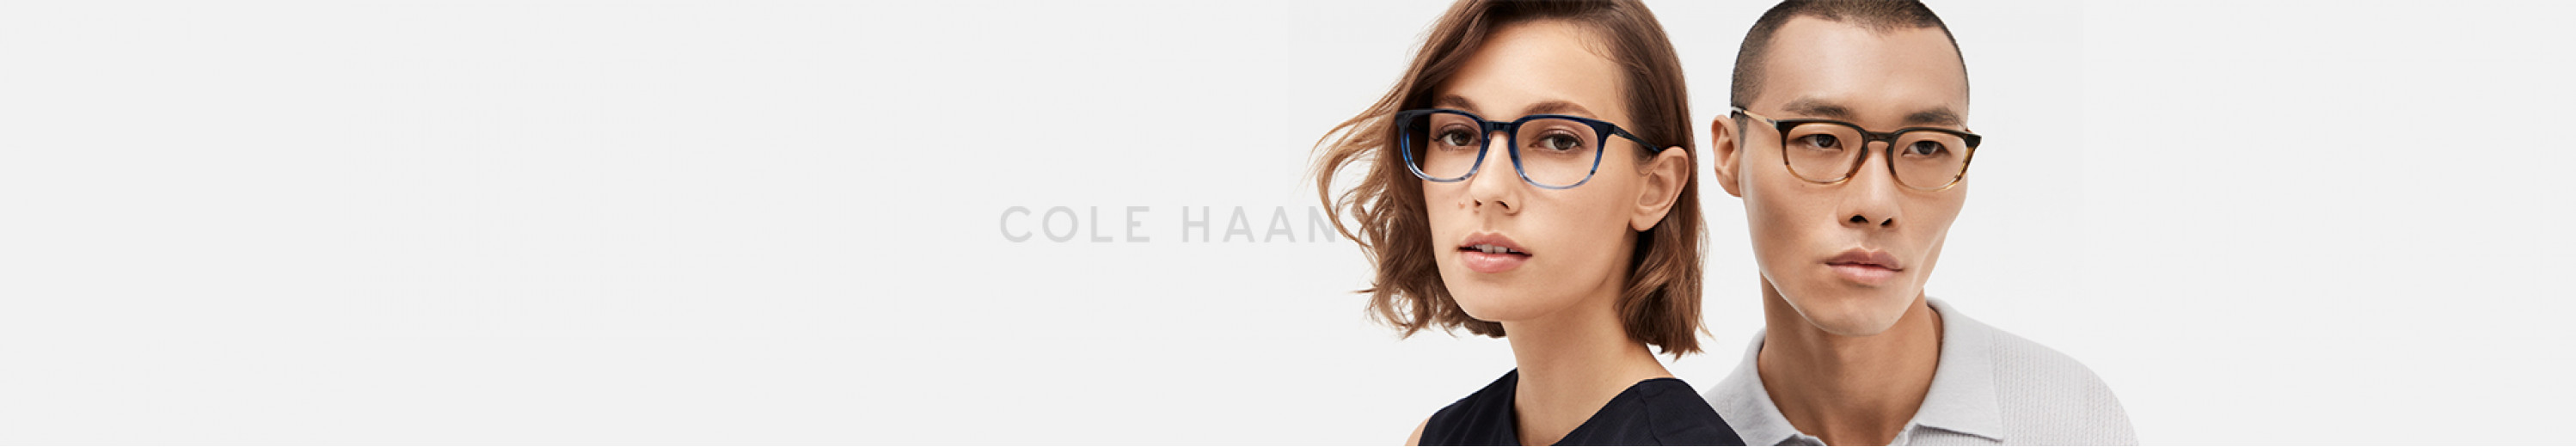 Cole Haan Eyeglasses